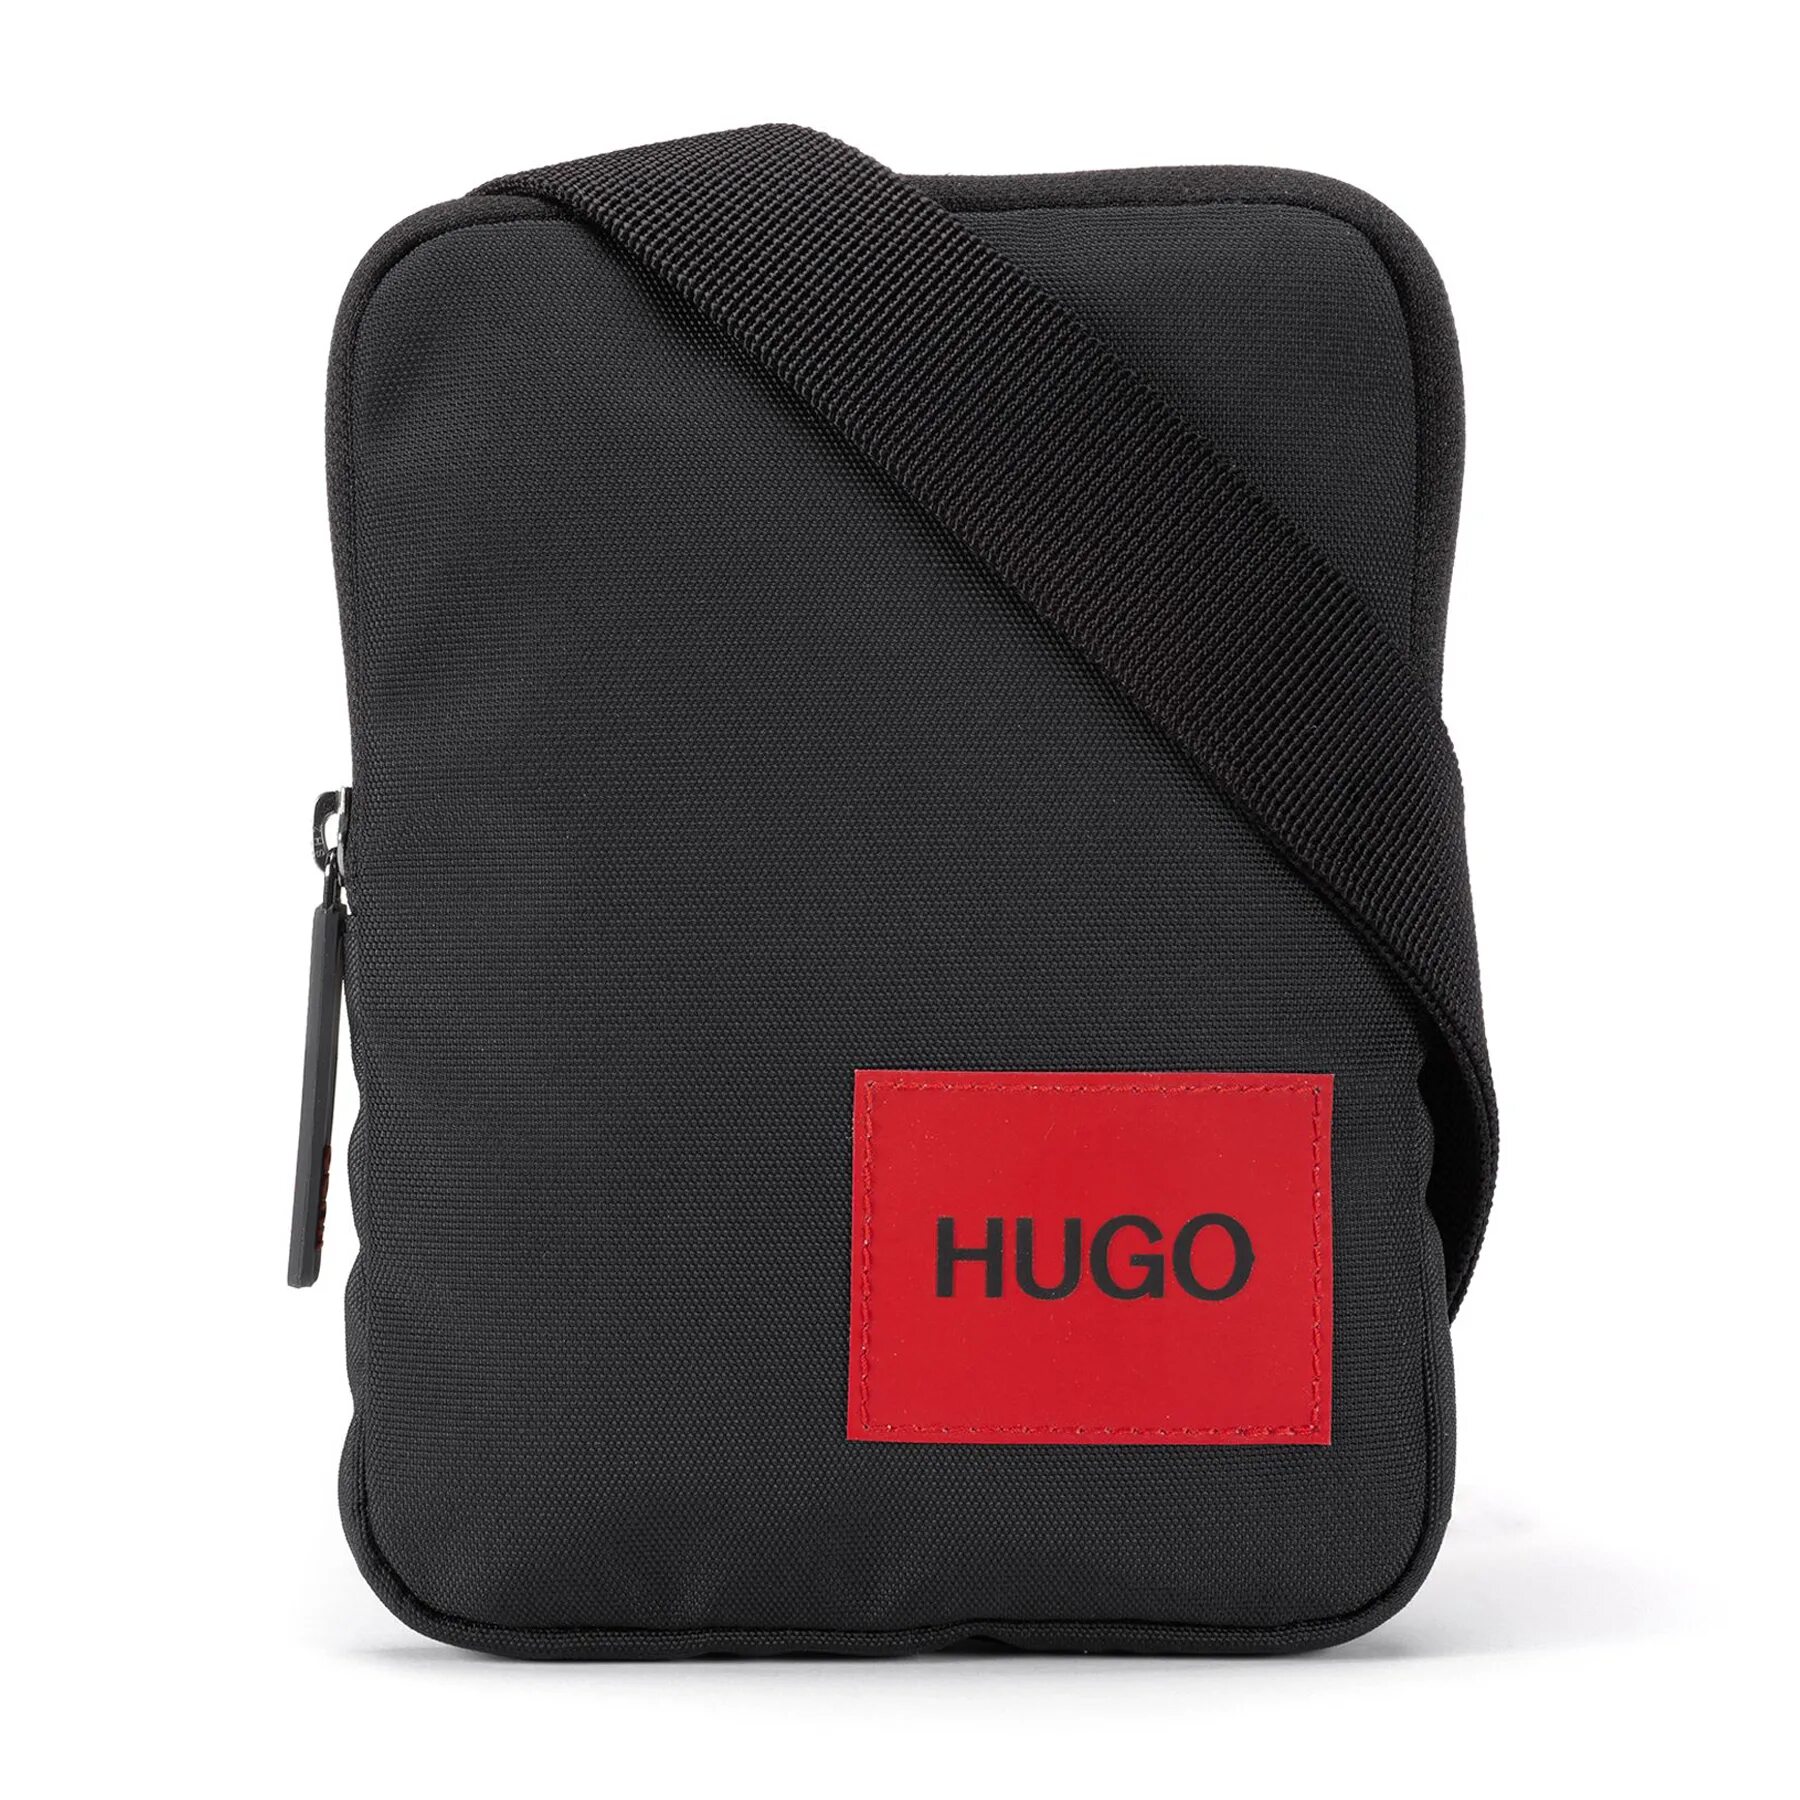 Сумка мужская hugo. Сумка Хуго босс. Hugo Boss Reporter Bag. Hugo Ethon сумка. Сумка Хуго босс мужская.